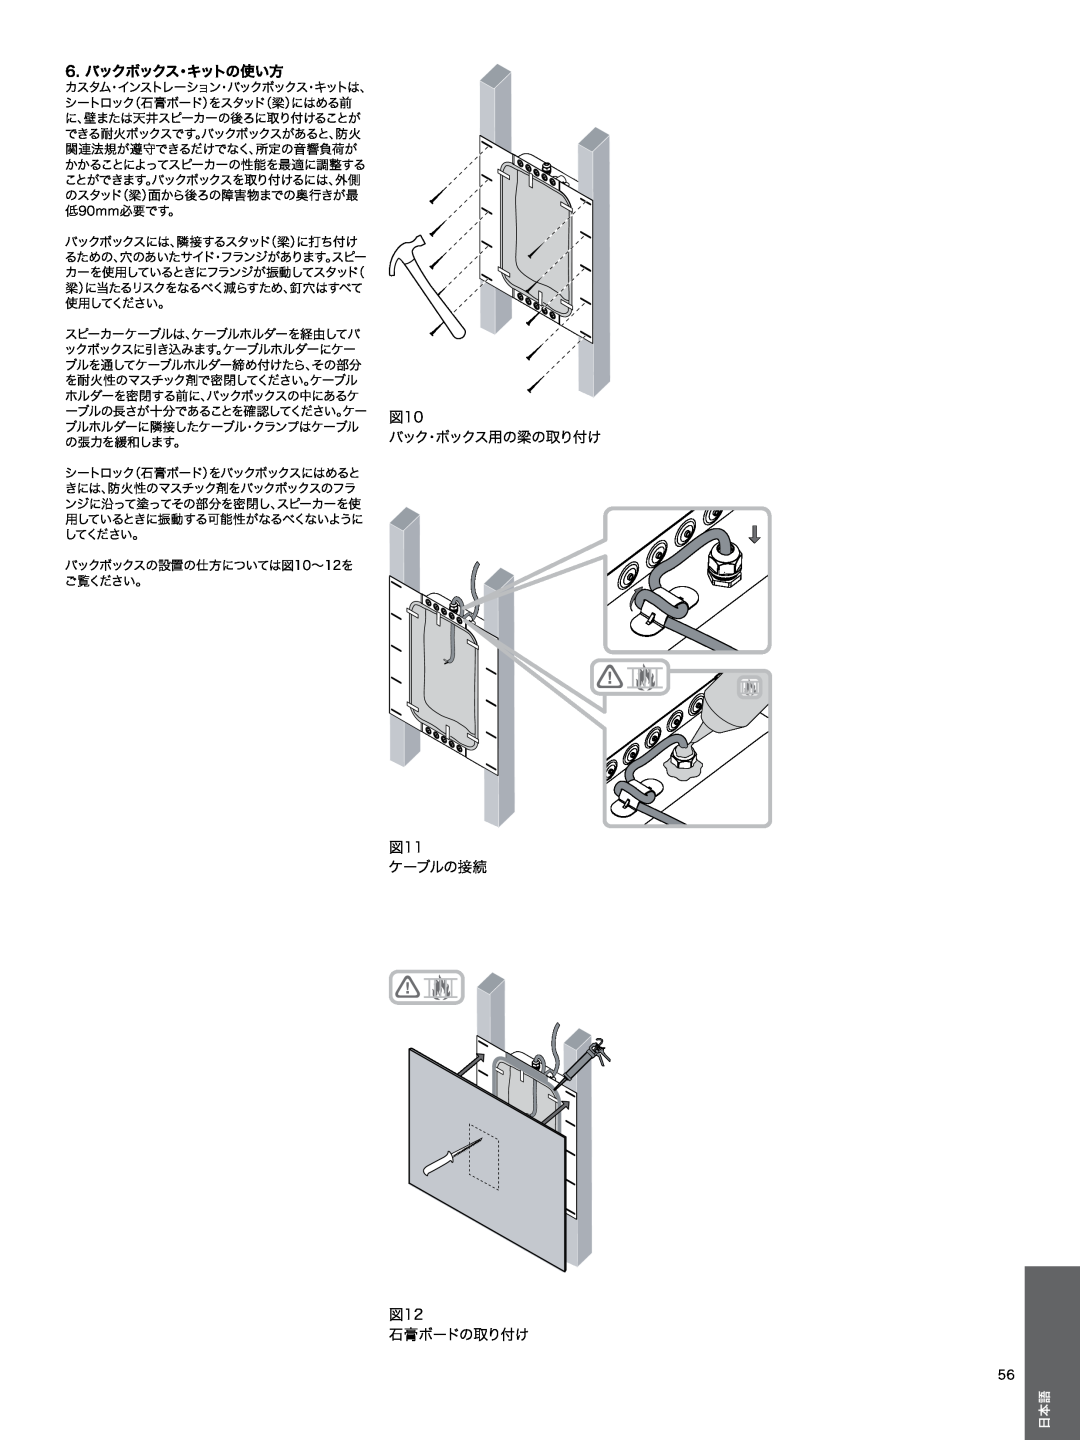 Bowers & Wilkins CWM3 manual 6.バックボックス・キットの使い方, バック・ボックス用の梁の取り付け, ケーブルの接続, 石膏ボードの取り付け 